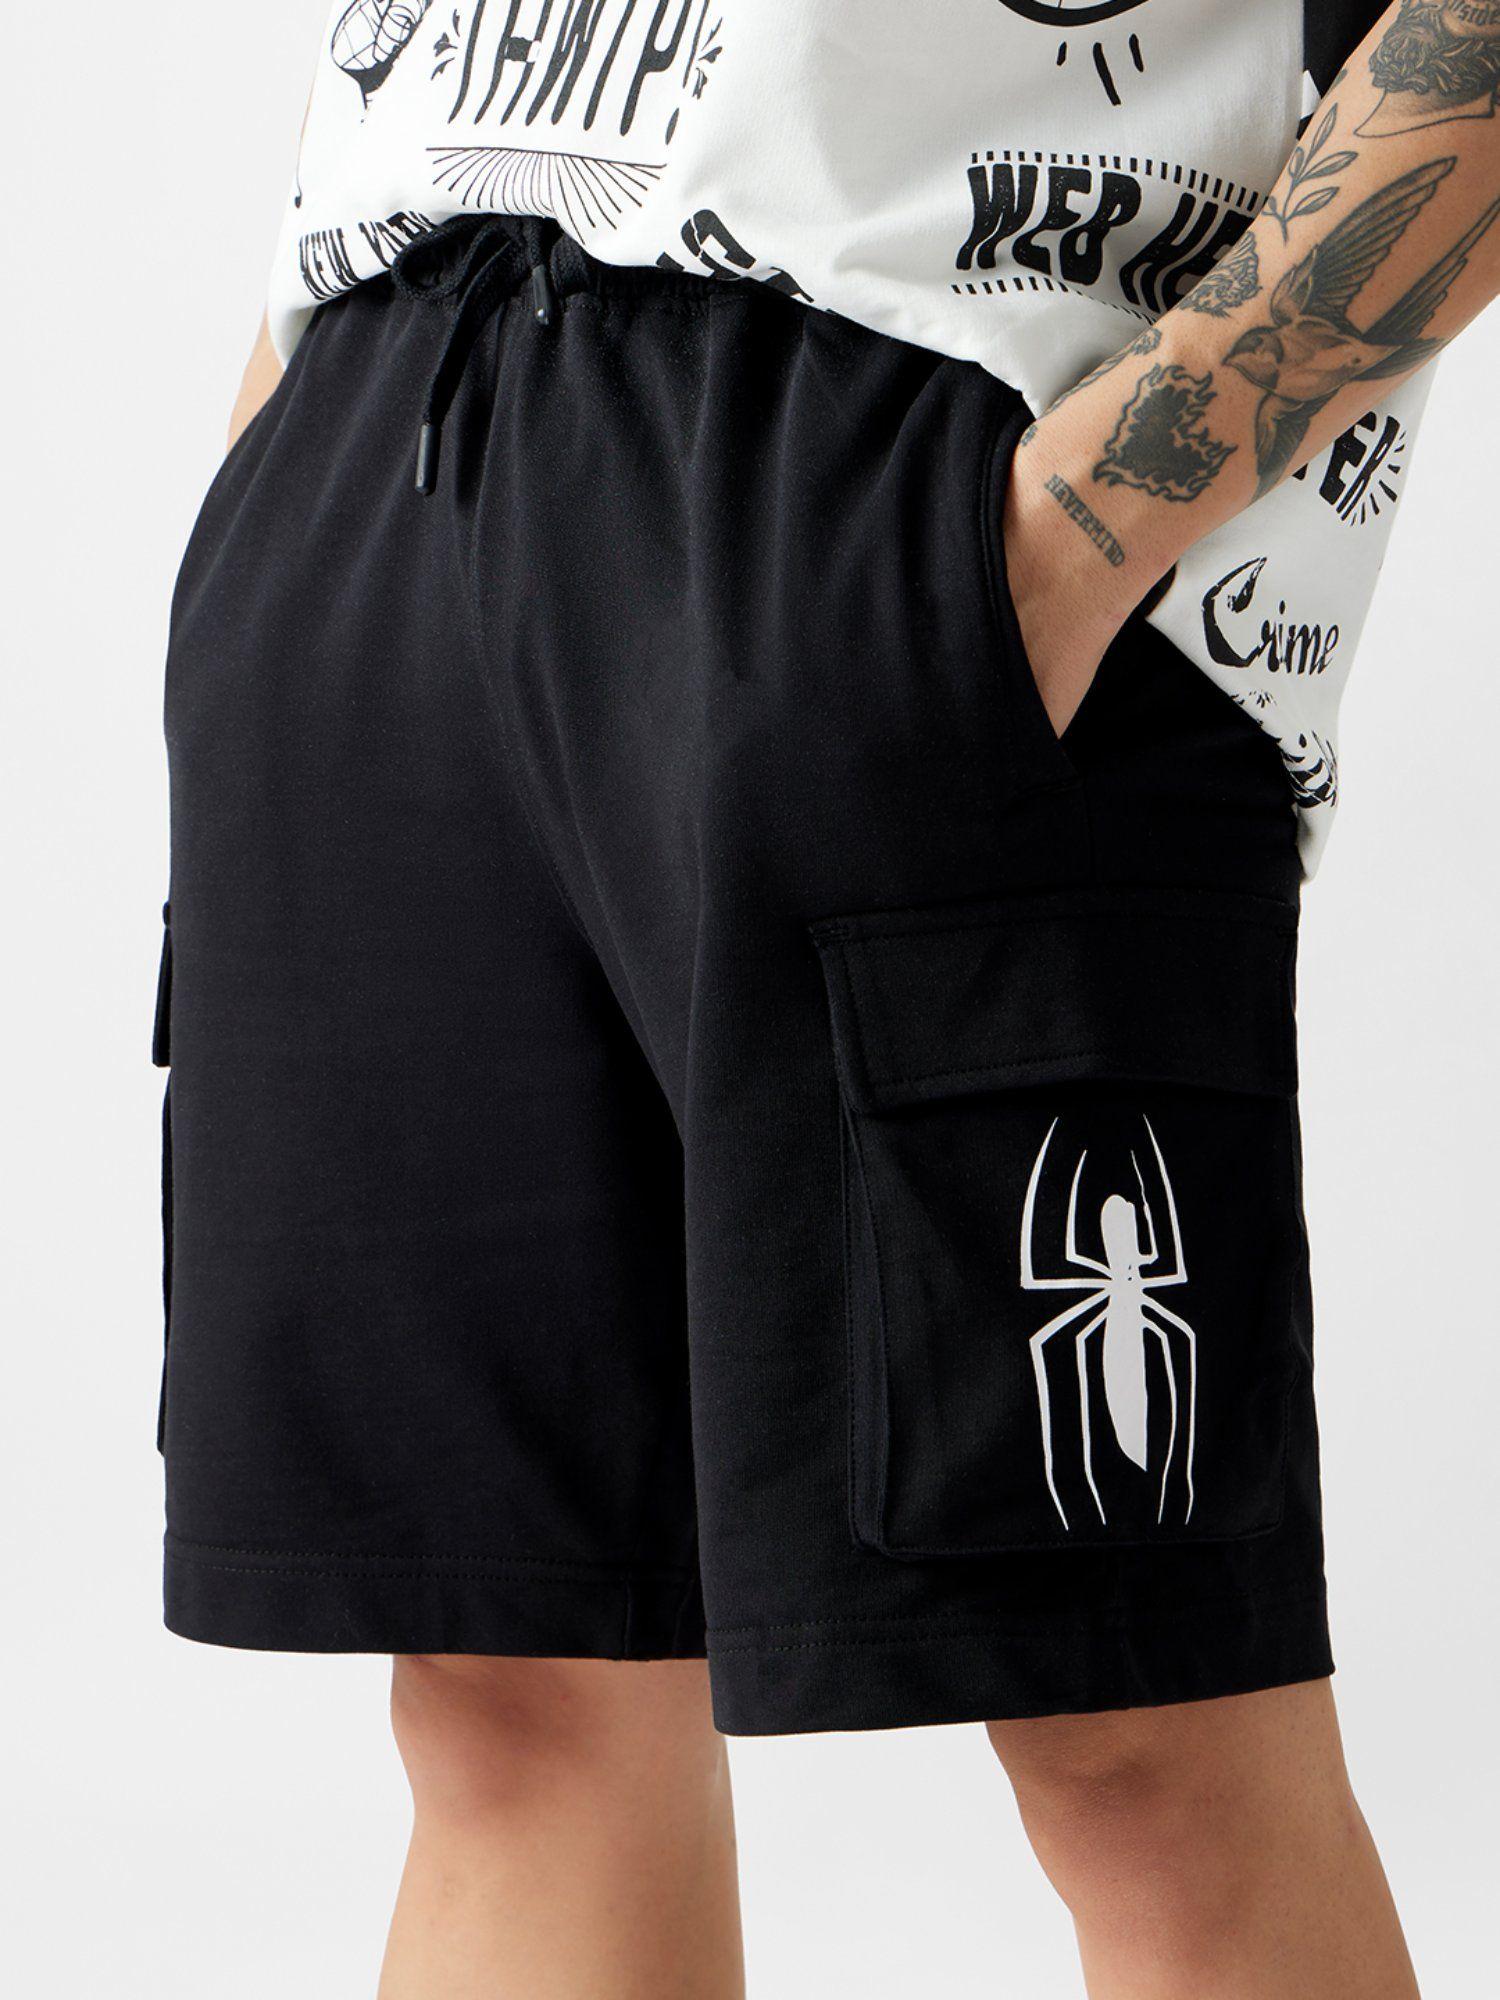 official spider-man crime fighter men bermuda shorts